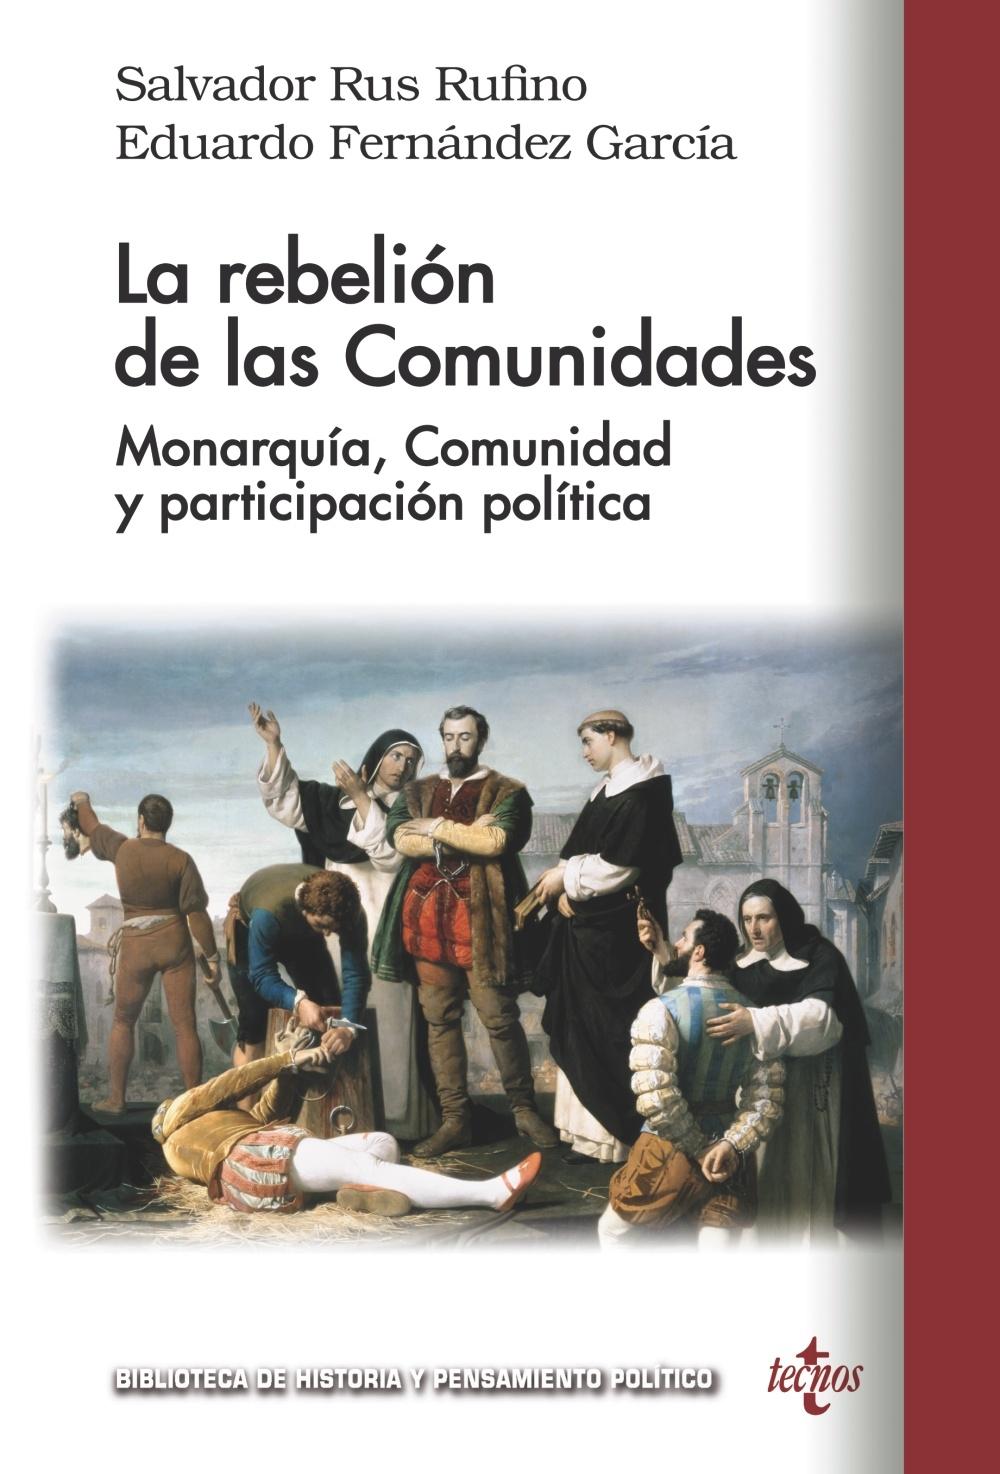 La rebelión de las Comunidades "Monarquía, Comunidad y participación política"